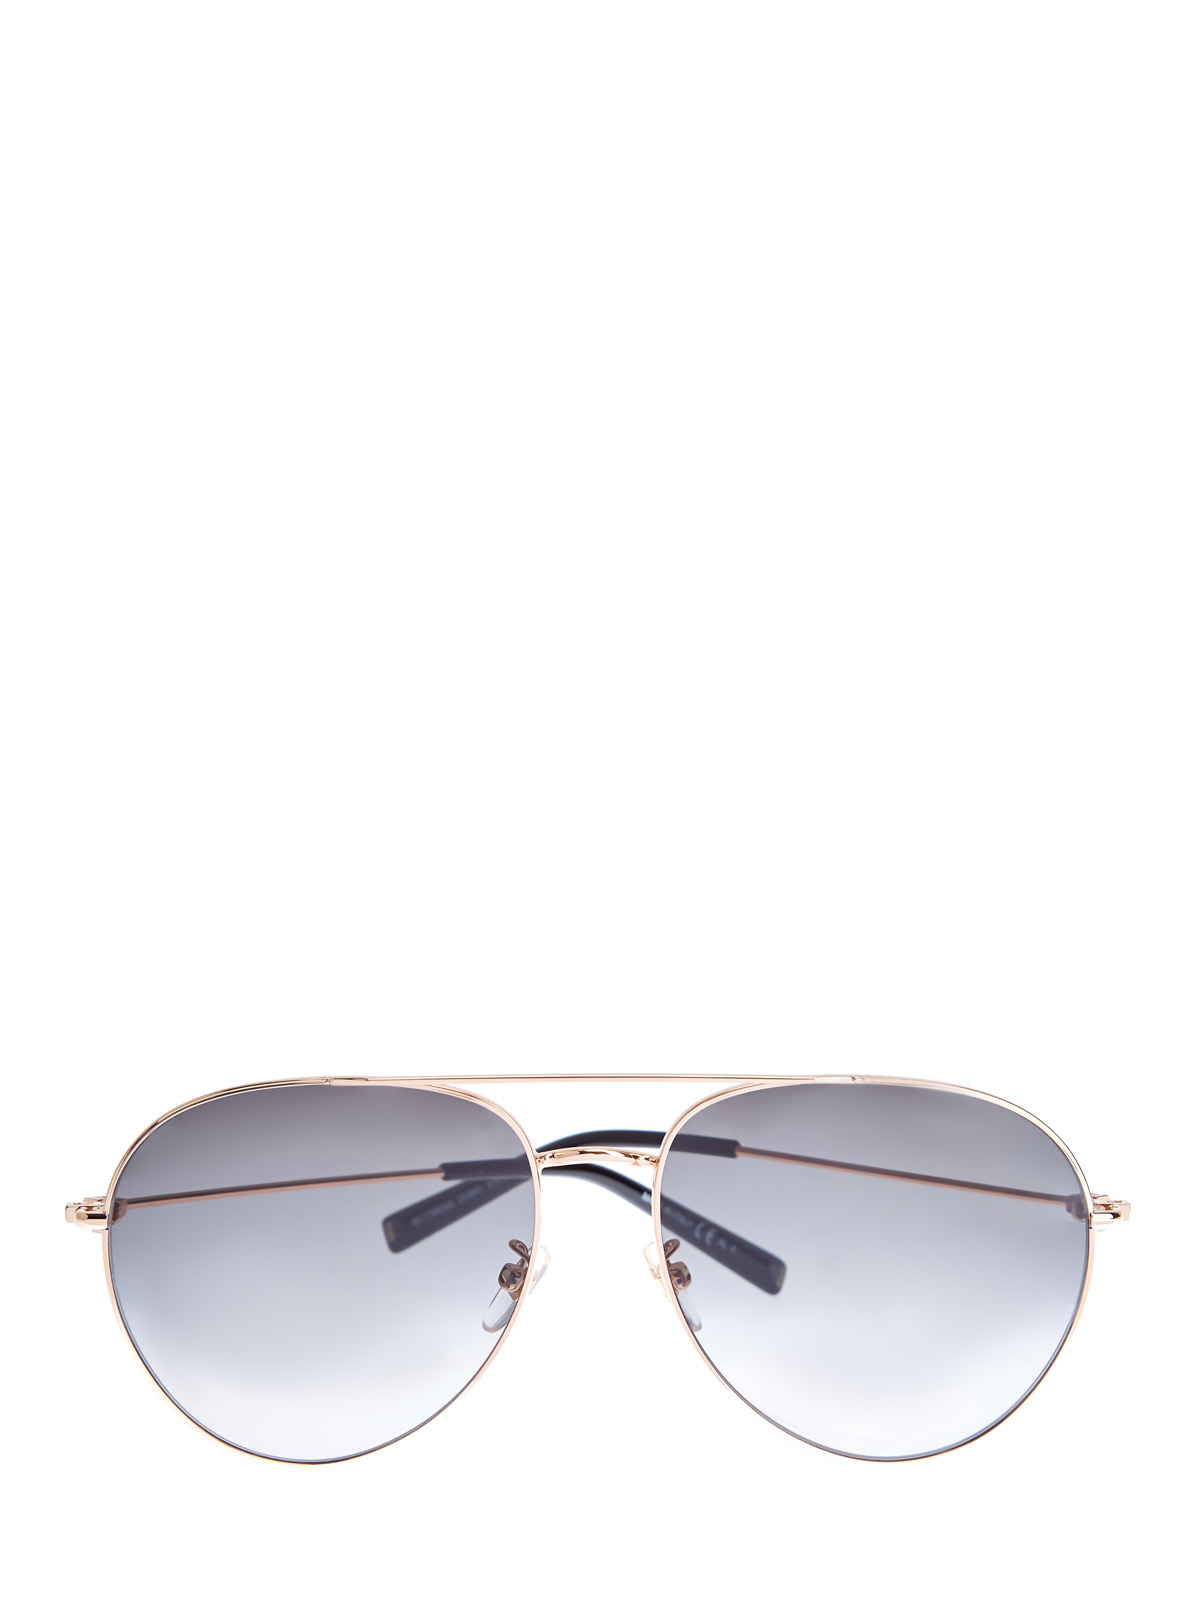 Очки в тонкой металлической оправе «авиатор» GIVENCHY (sunglasses), цвет черный, размер S;M;L - фото 1